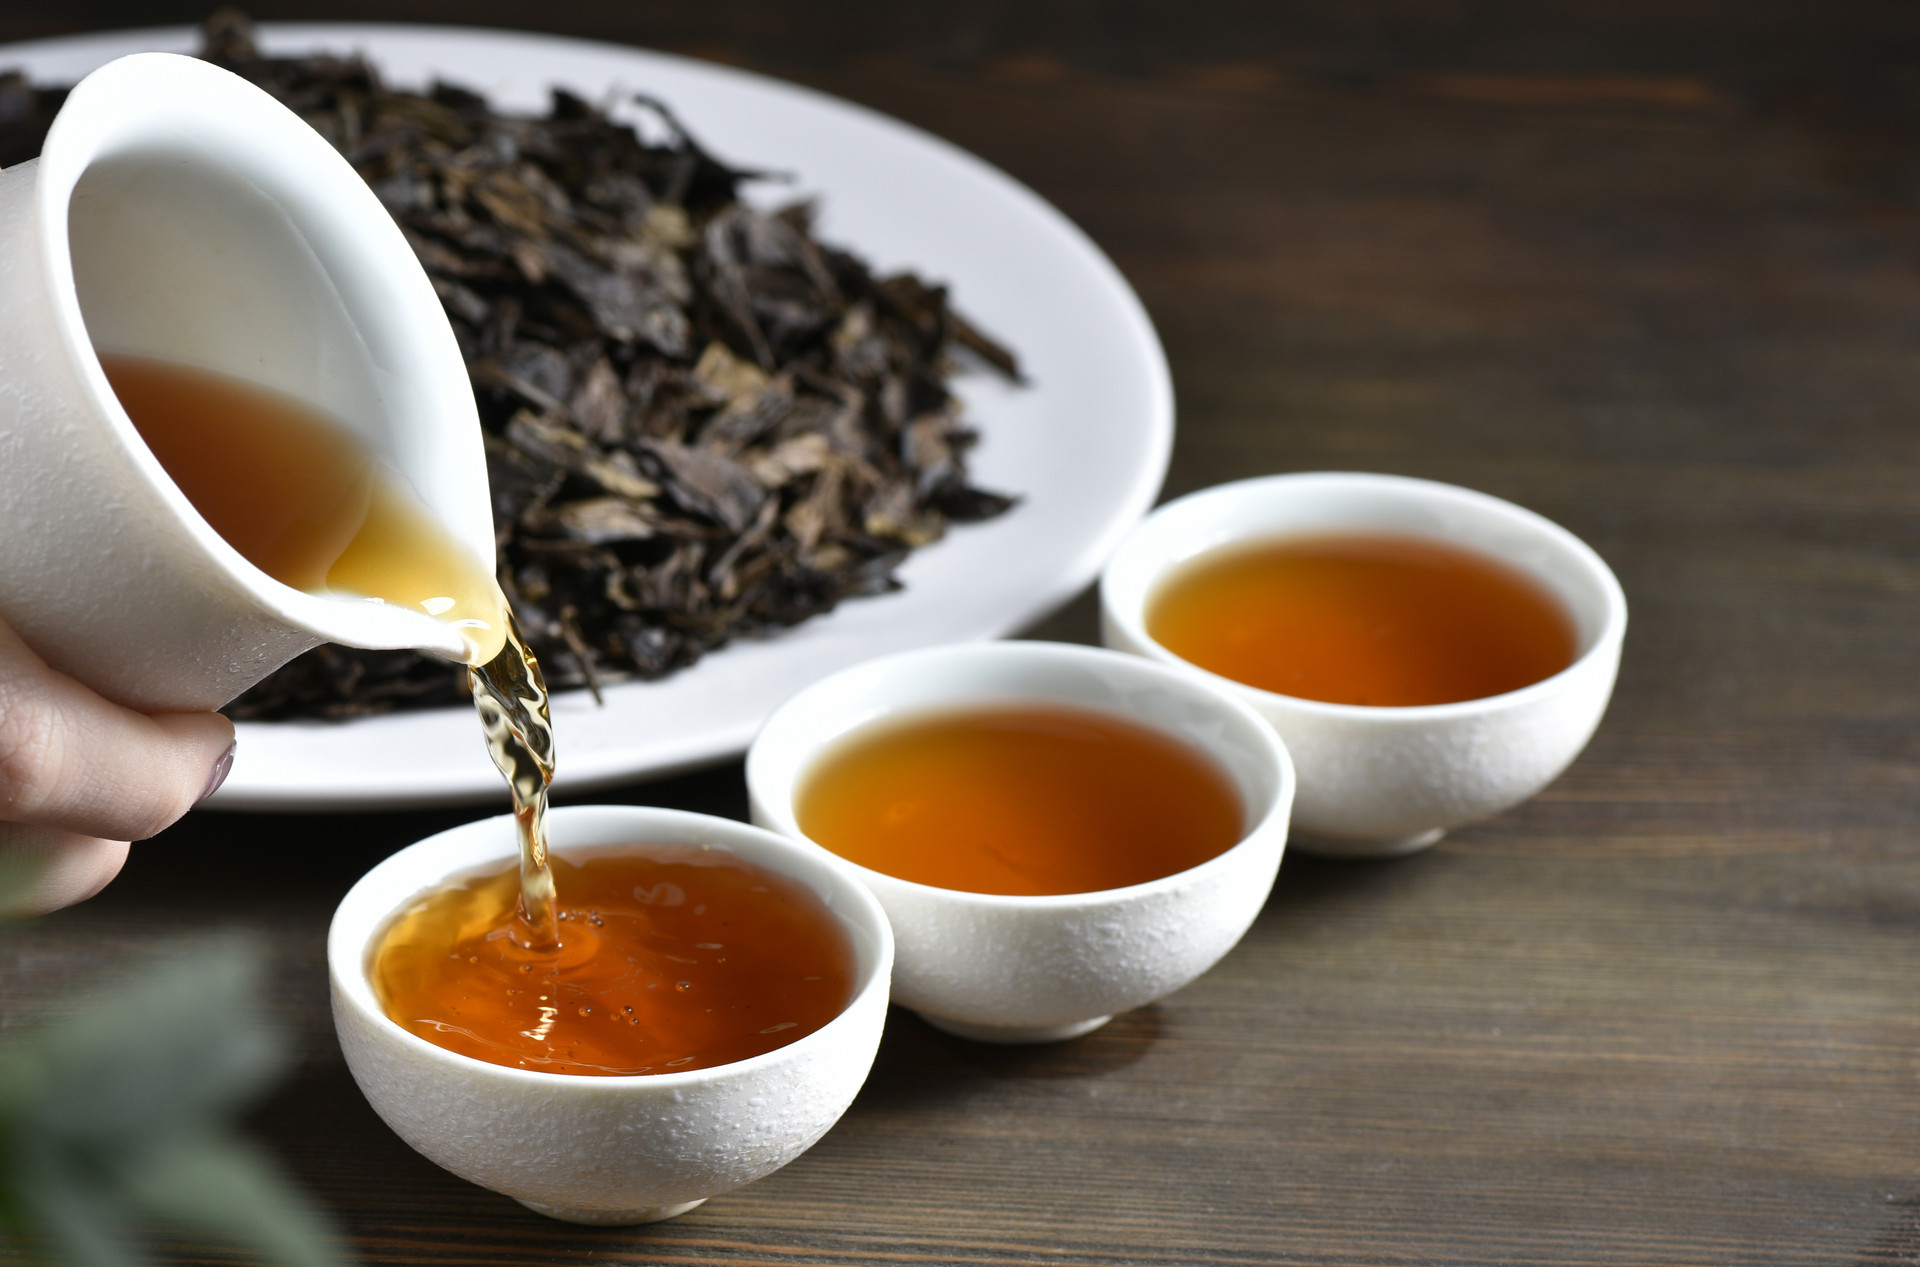 关于红茶养生功效与作用的五大问题 - 红茶的品牌_红茶有哪些品牌_中国红茶十大品牌 - 普洱茶网,www.puercn.com